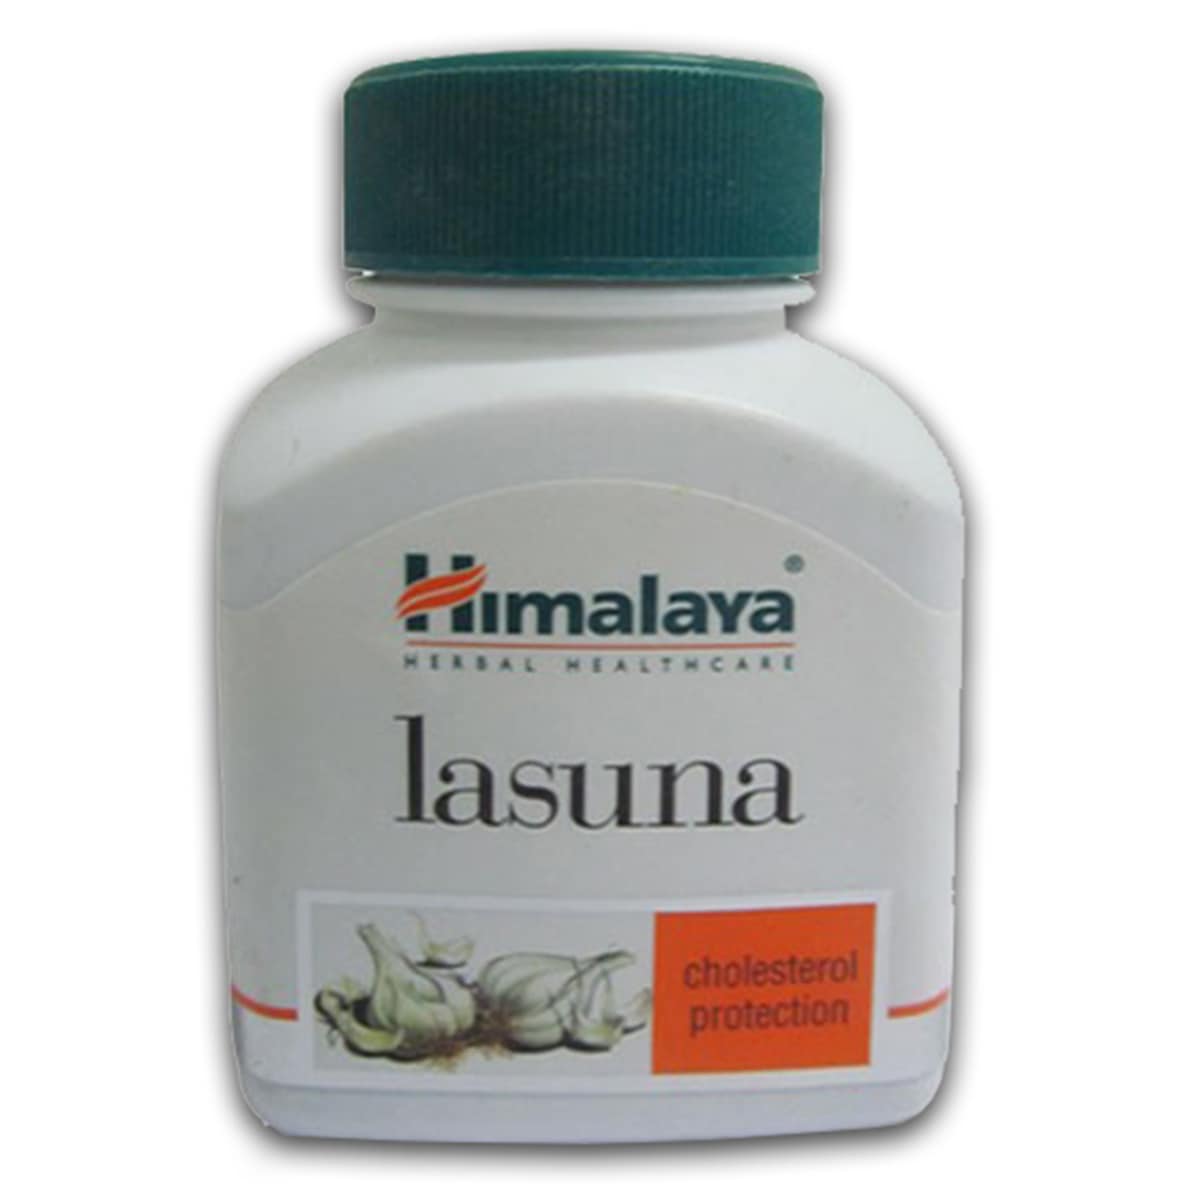 Buy Himalaya Herbals Lasuna Cholesterol Protection - 60 Capsules